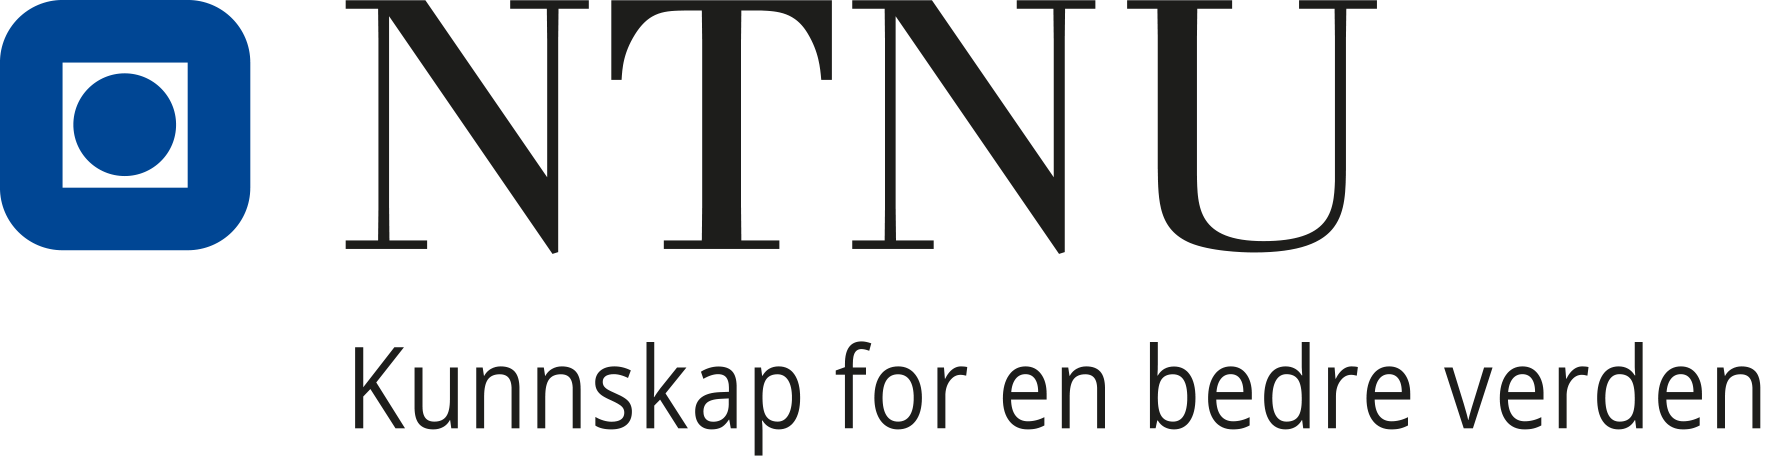 NTNU logo - Kunnskap for en bedre verden